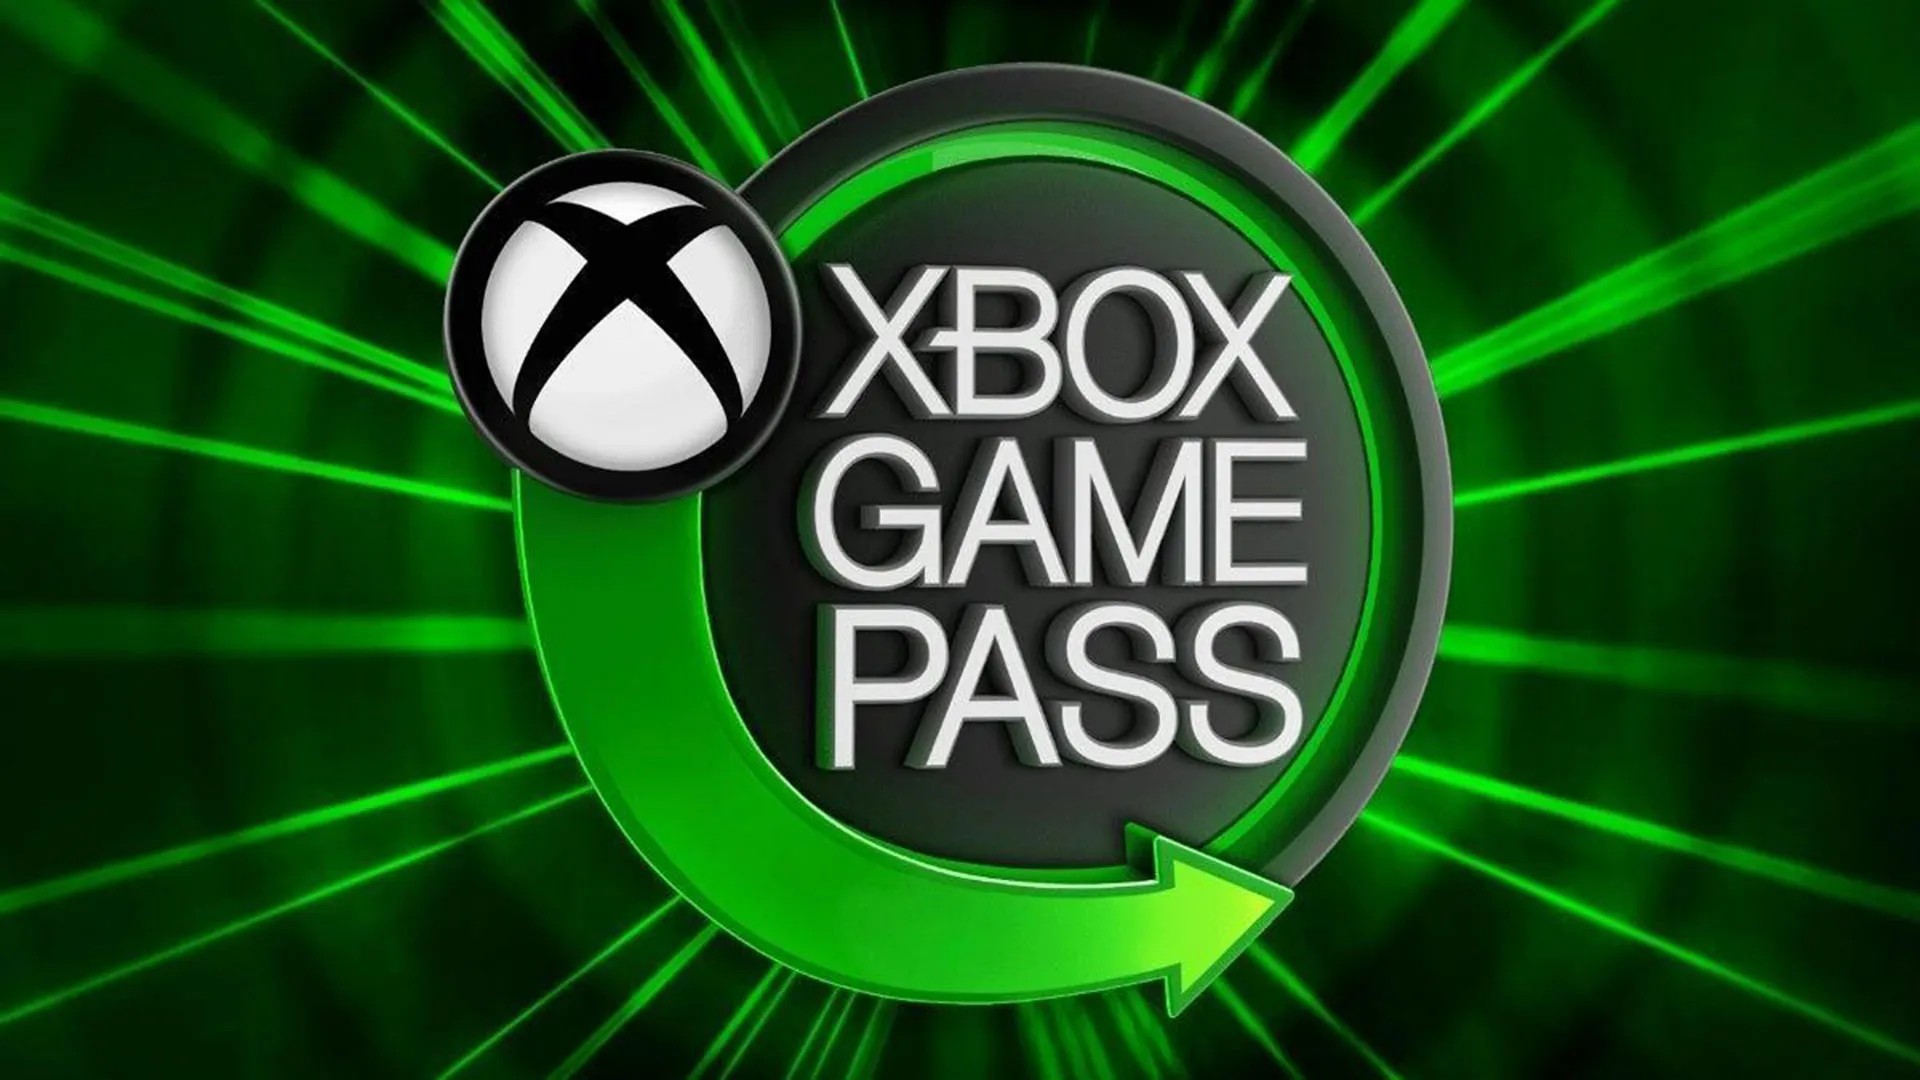 Microsoft insiste que preço do Game Pass não vai aumentar após